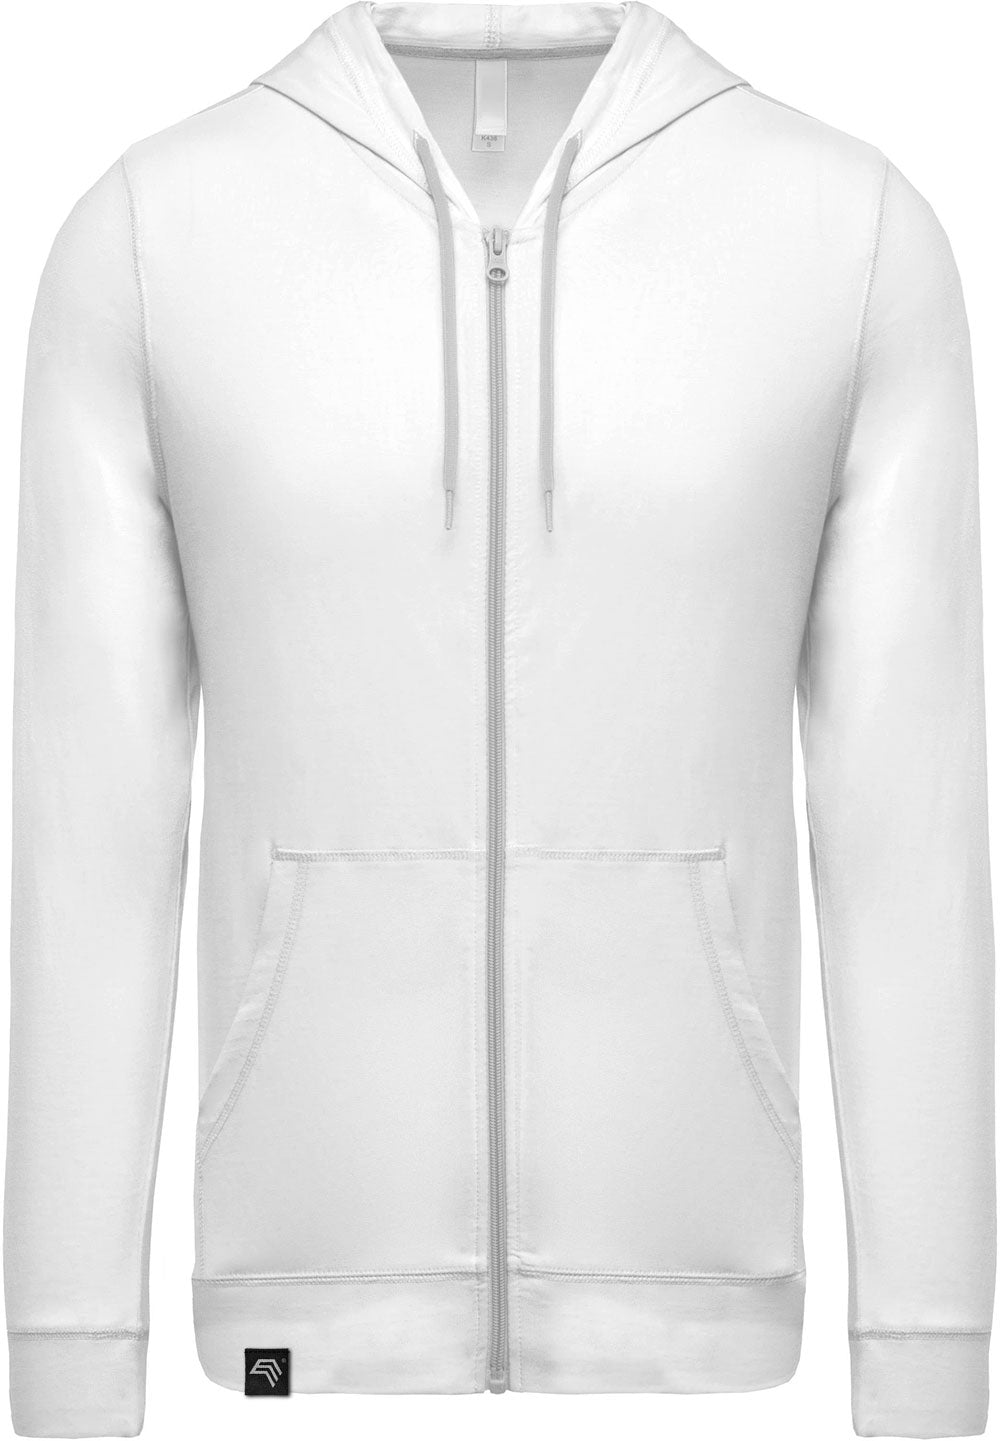 KRB K438 ― Lightweight Contrast Sweat Jacket - Weiß